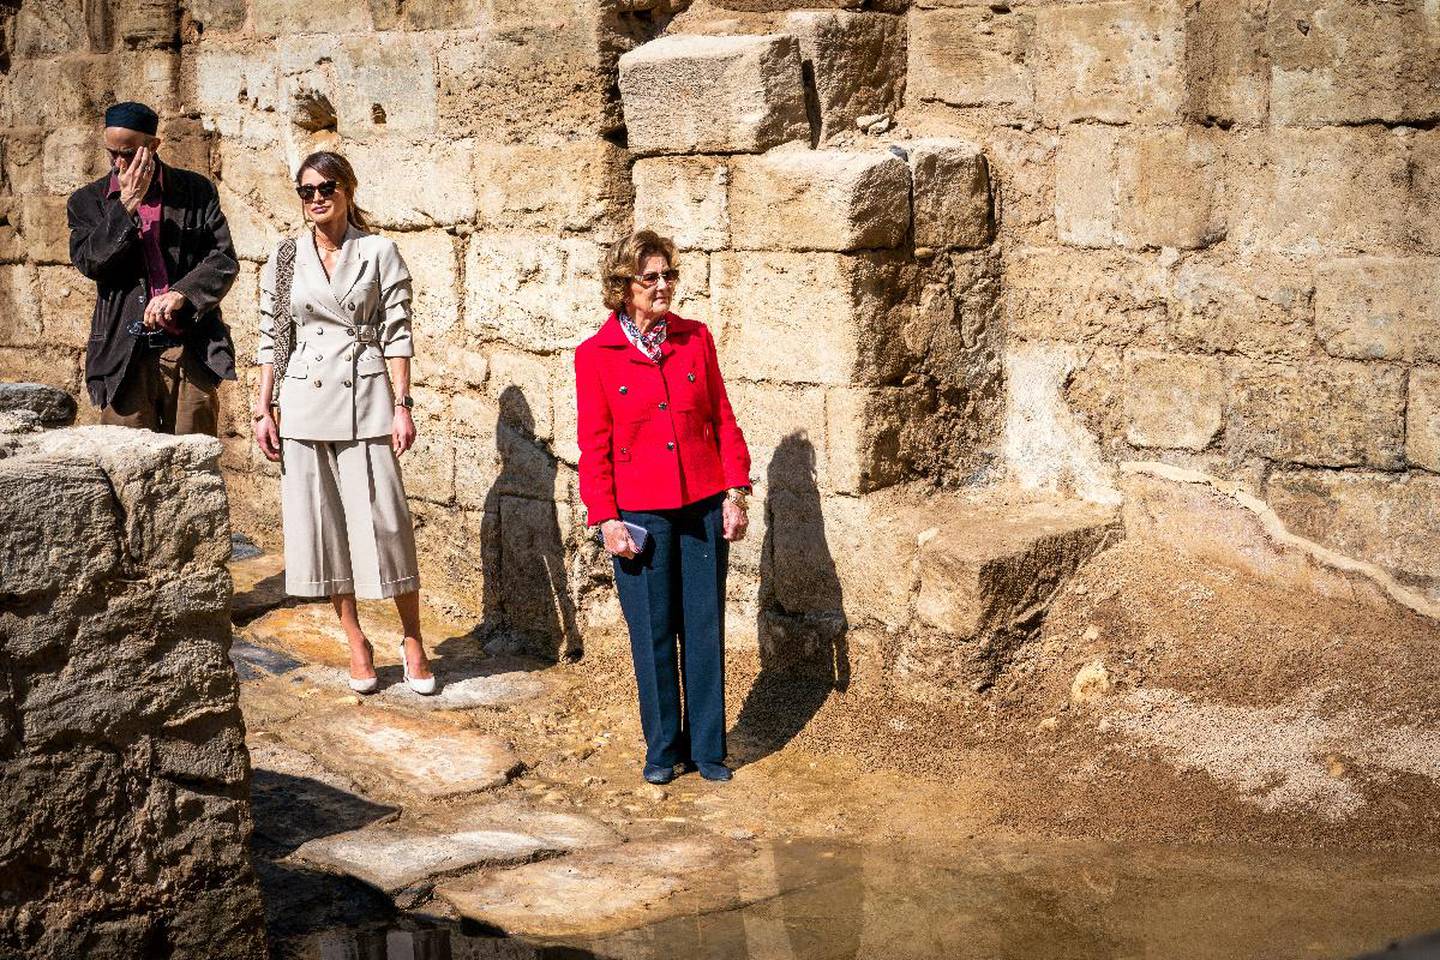 Dronning Sonja ved dåpsstedet ved den østlige bredden av Jordan-elven der Jesus ble døpt av Johannes døperen. Det historiske og arkeologiske verdensarvstedet heter Al-Maghtas, som betyr «dåp» eller «fordypning» på arabisk. Sammen med dronningen er Jordans dronning Rania og prins Ghazi.